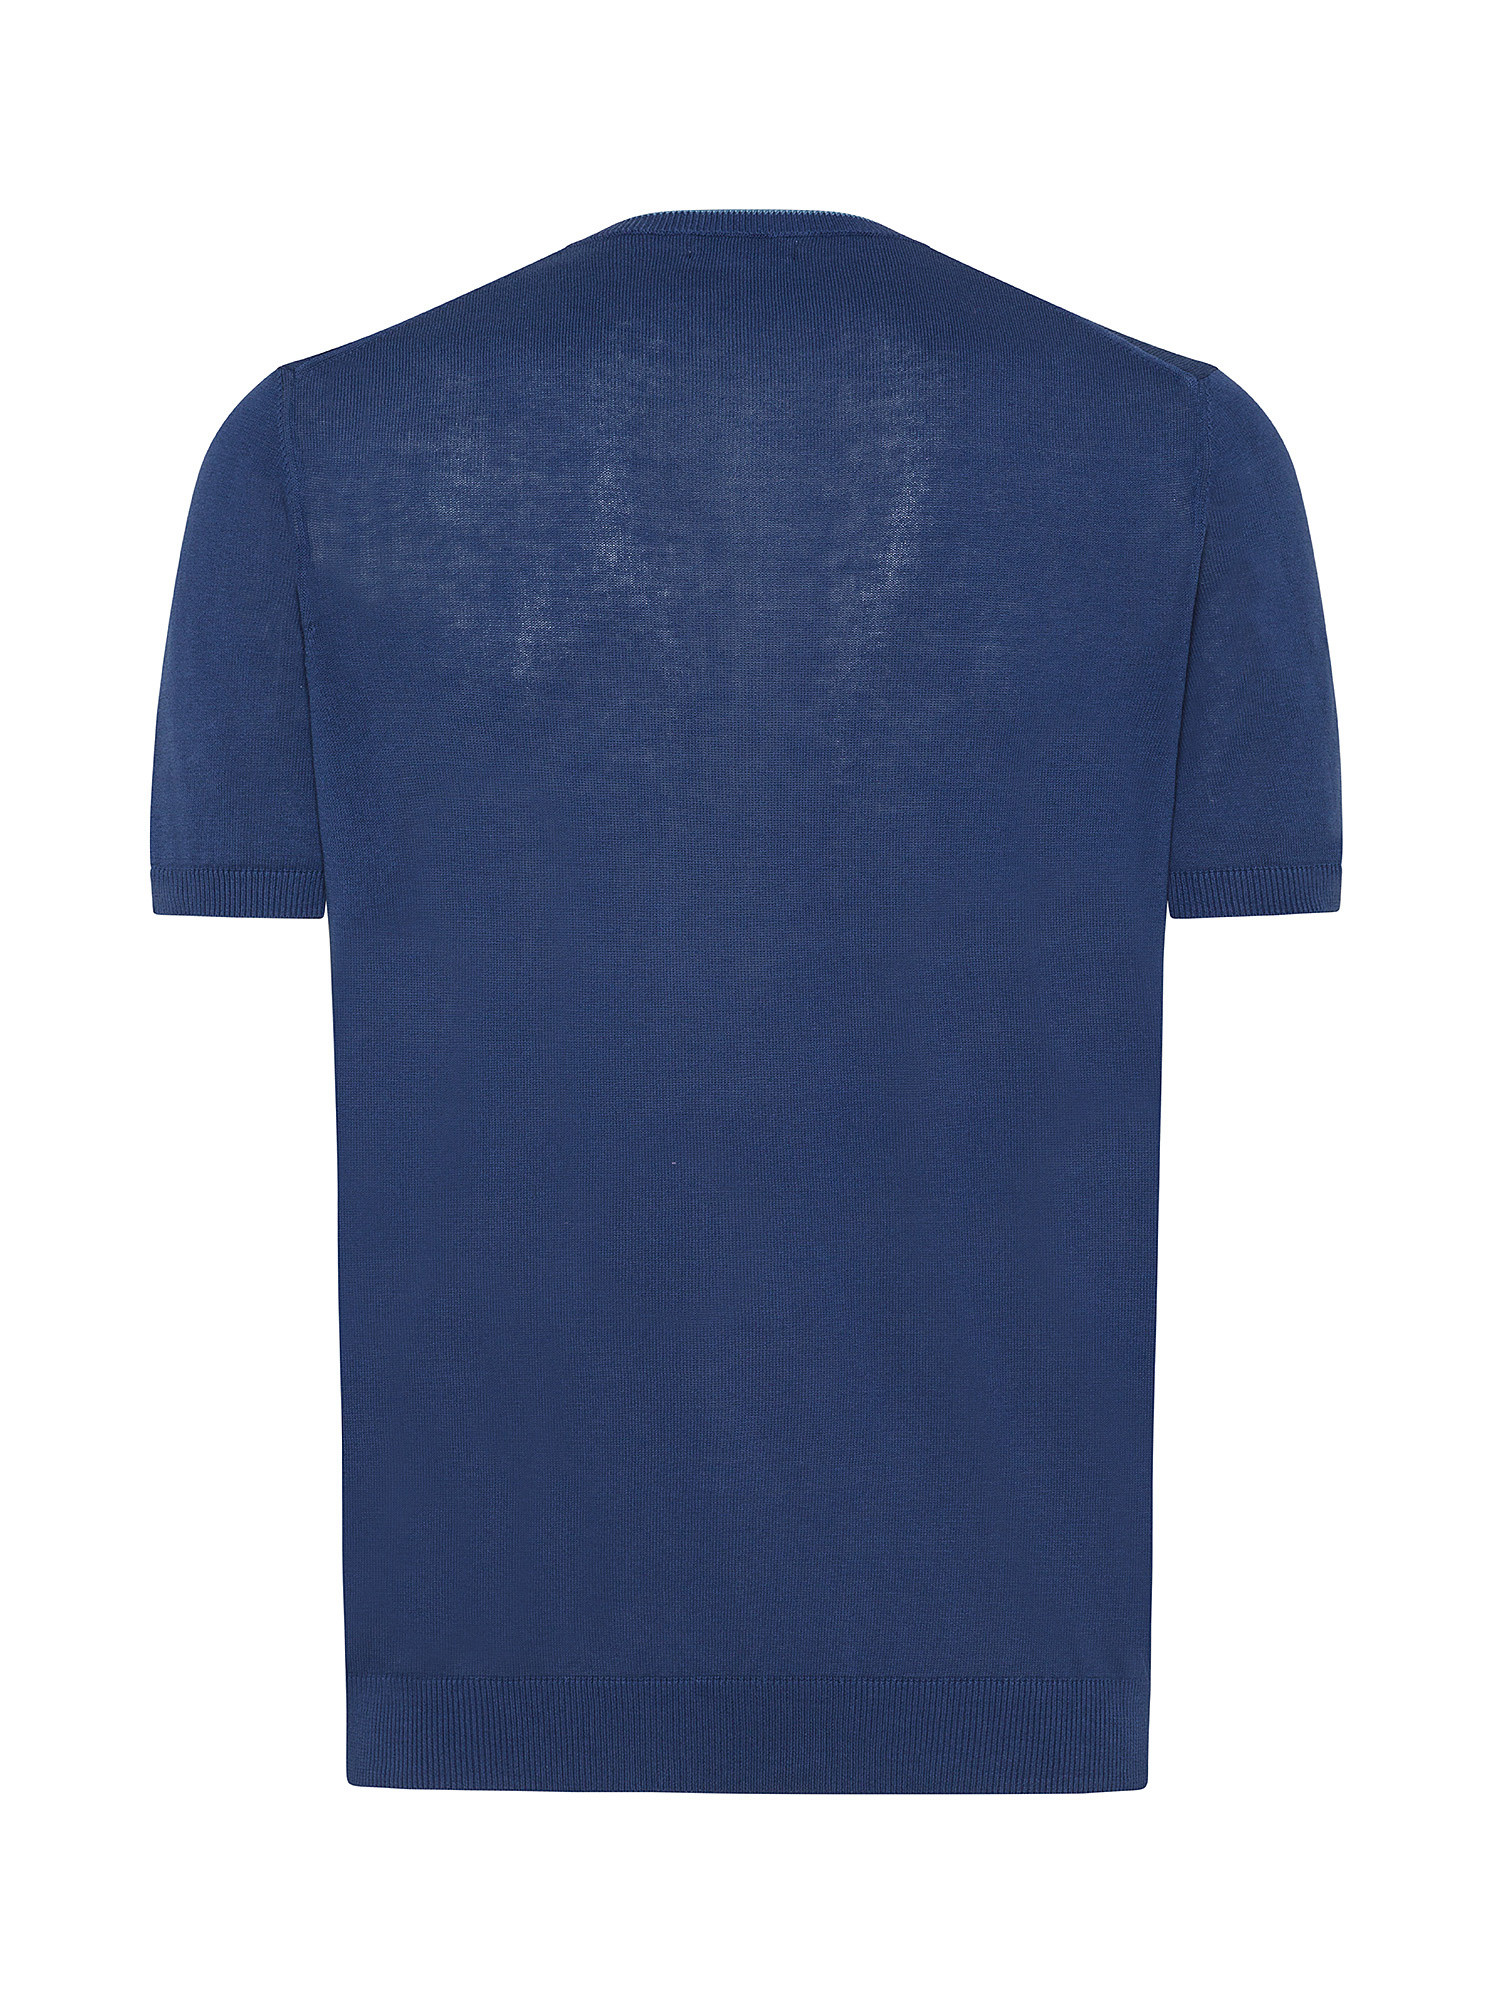 Luca D'Altieri - Cotton crepe T-shirt, Light Blue, large image number 1